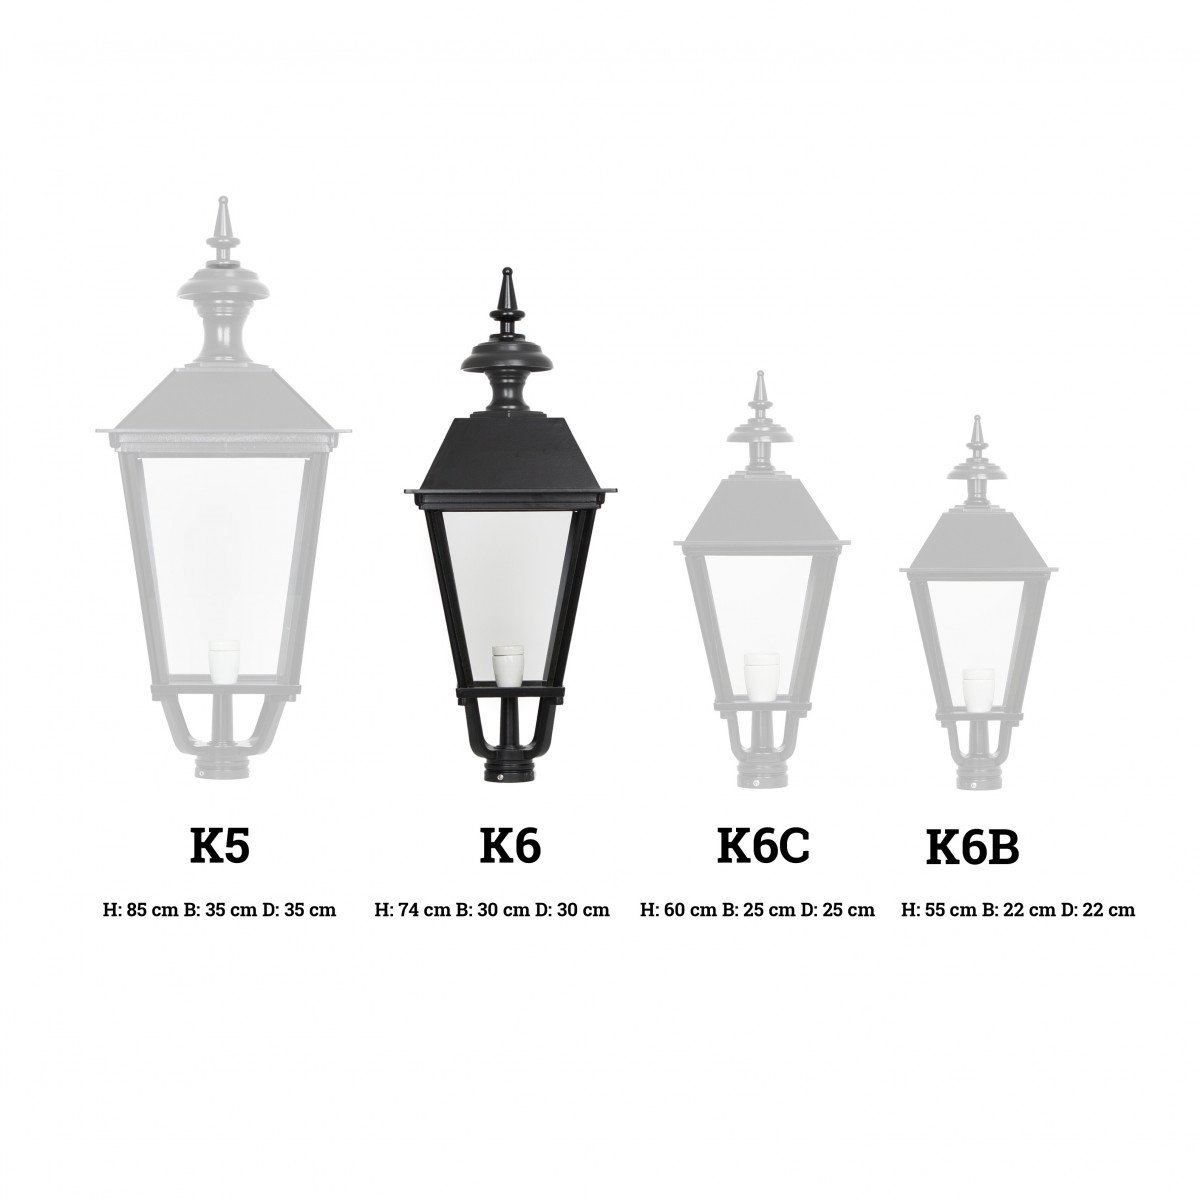 Lanterne carrée K6 (1411) éclairage d'extérieur de KS Lighting